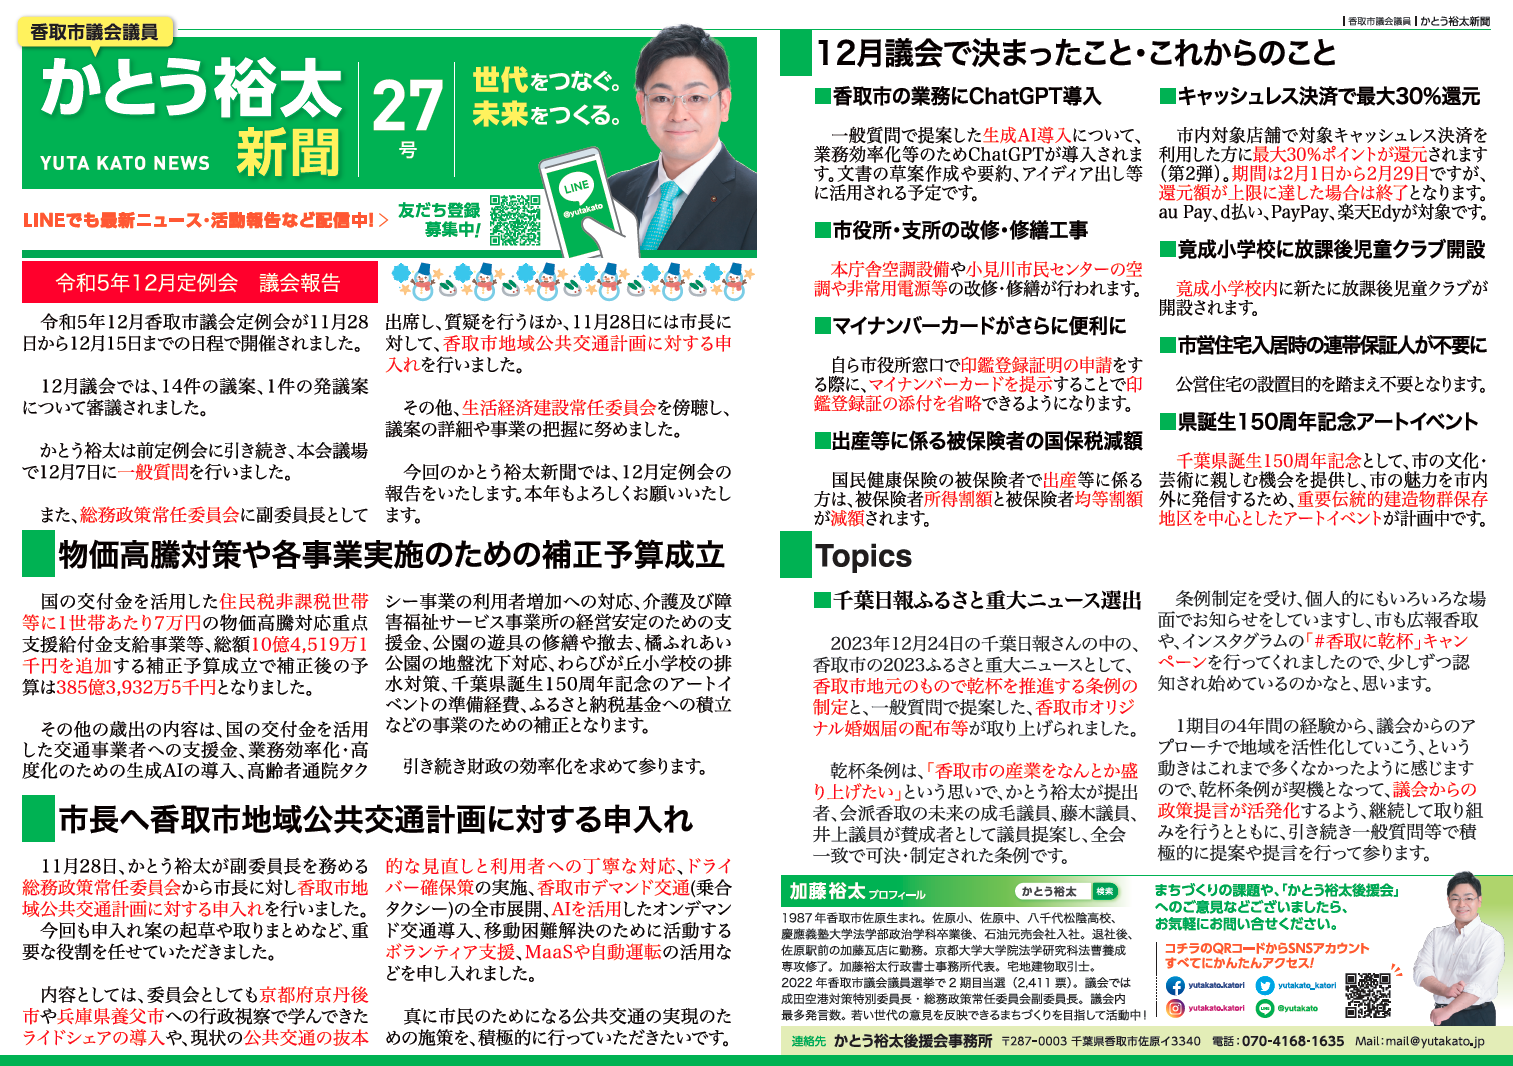 かとう裕太新聞第27号令和5年12月香取市議会定例会報告号